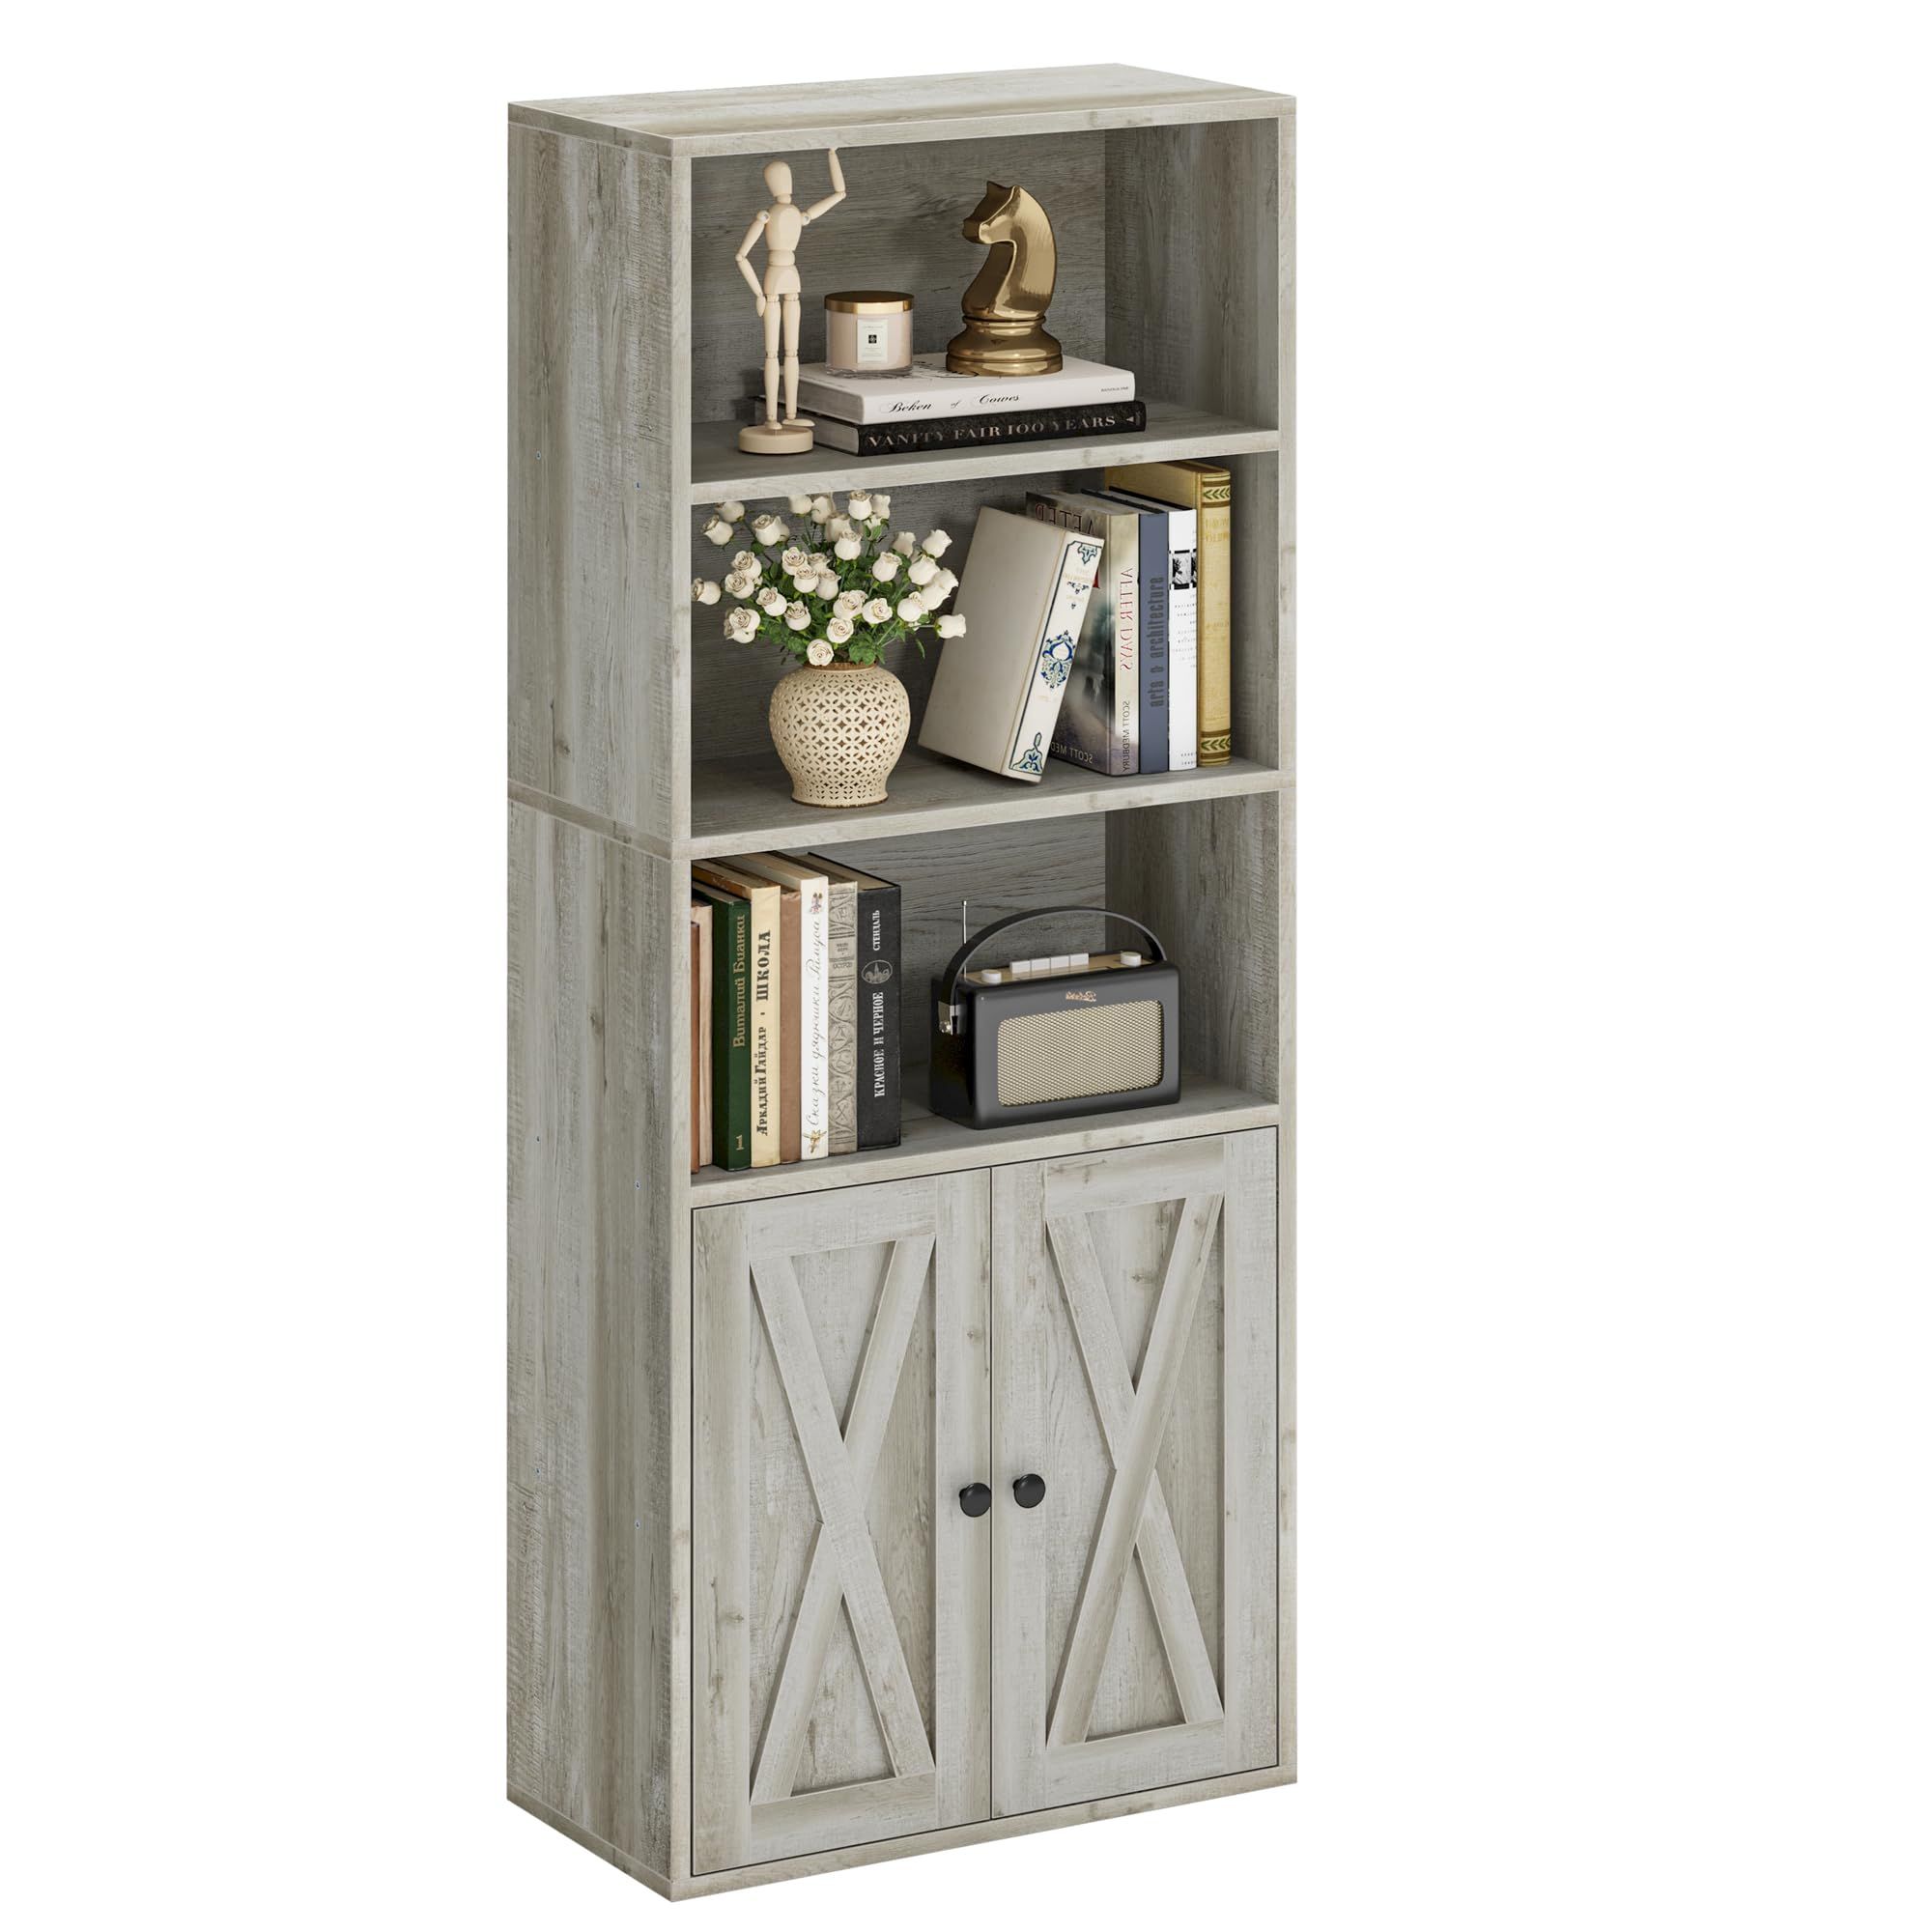 IRONCK Industrial Bookshelves and Bookcases with Doors 11.8in Depth Floor Standing 5 Shelf Displa... | Amazon (US)